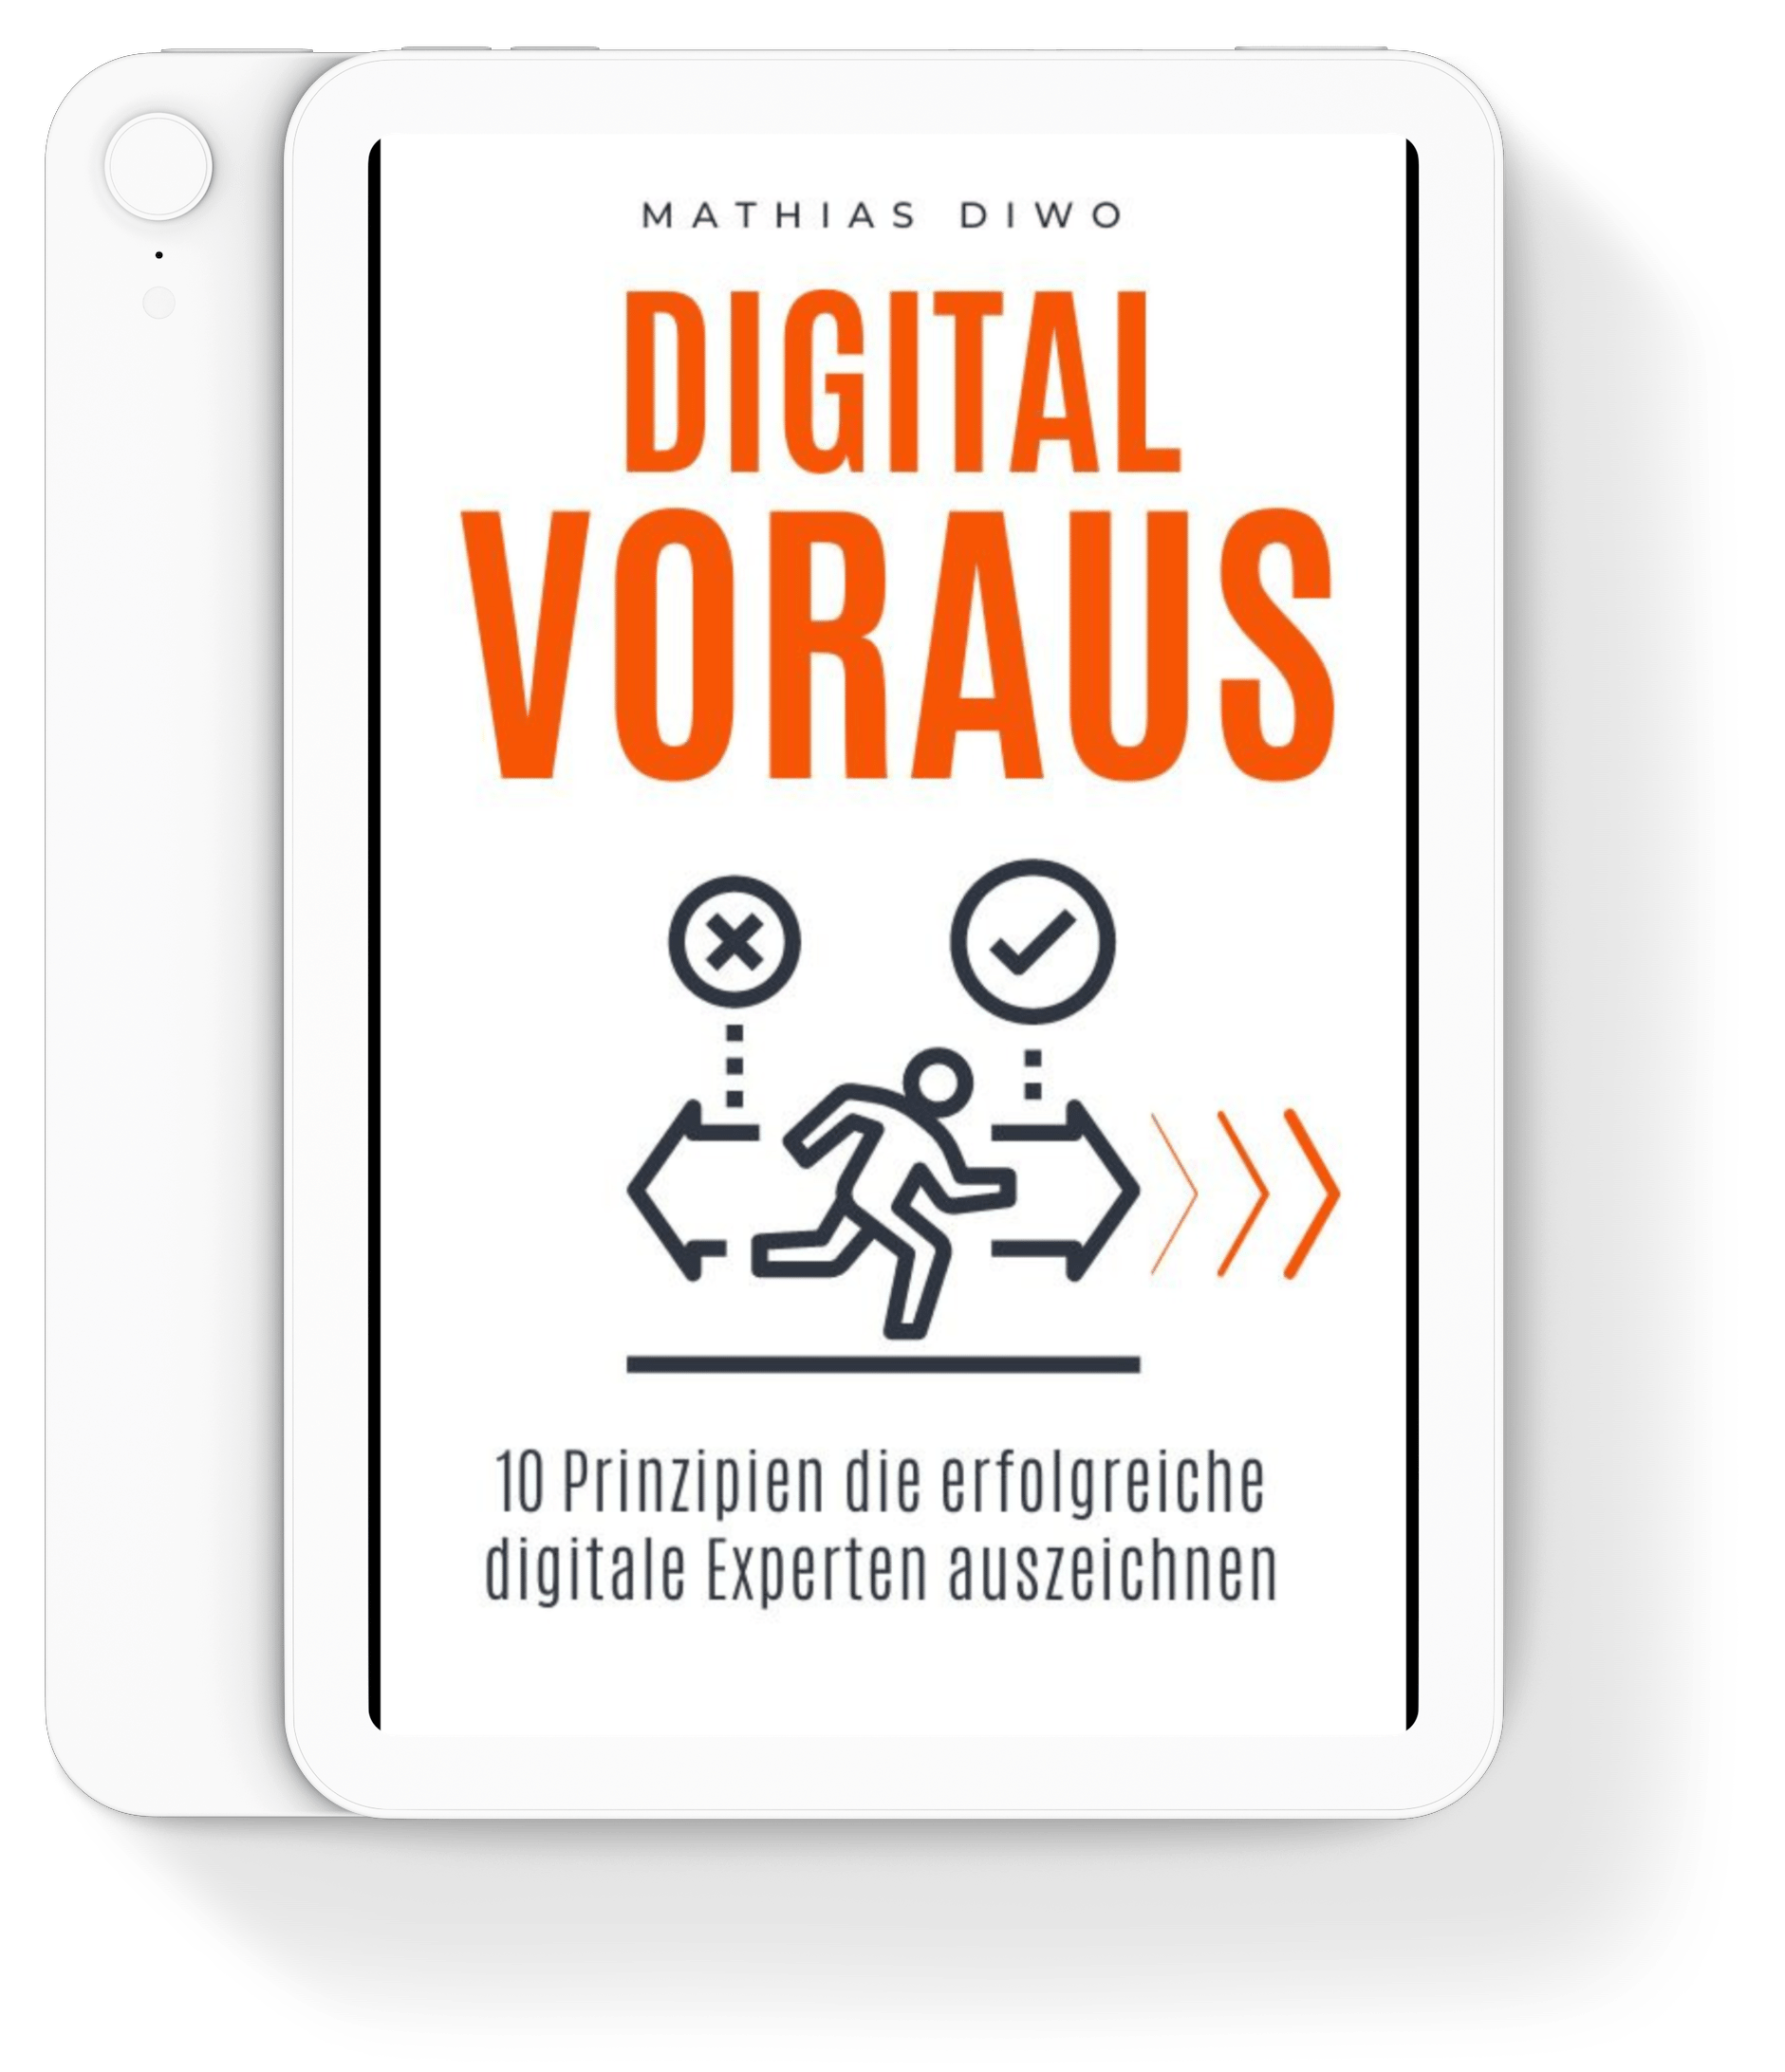 Digital-Voraus-Playbook-Mathias-Diwo-Die-10-Prinzipien-die-erfolgreiche-digitale-Experten-auszeichnen-